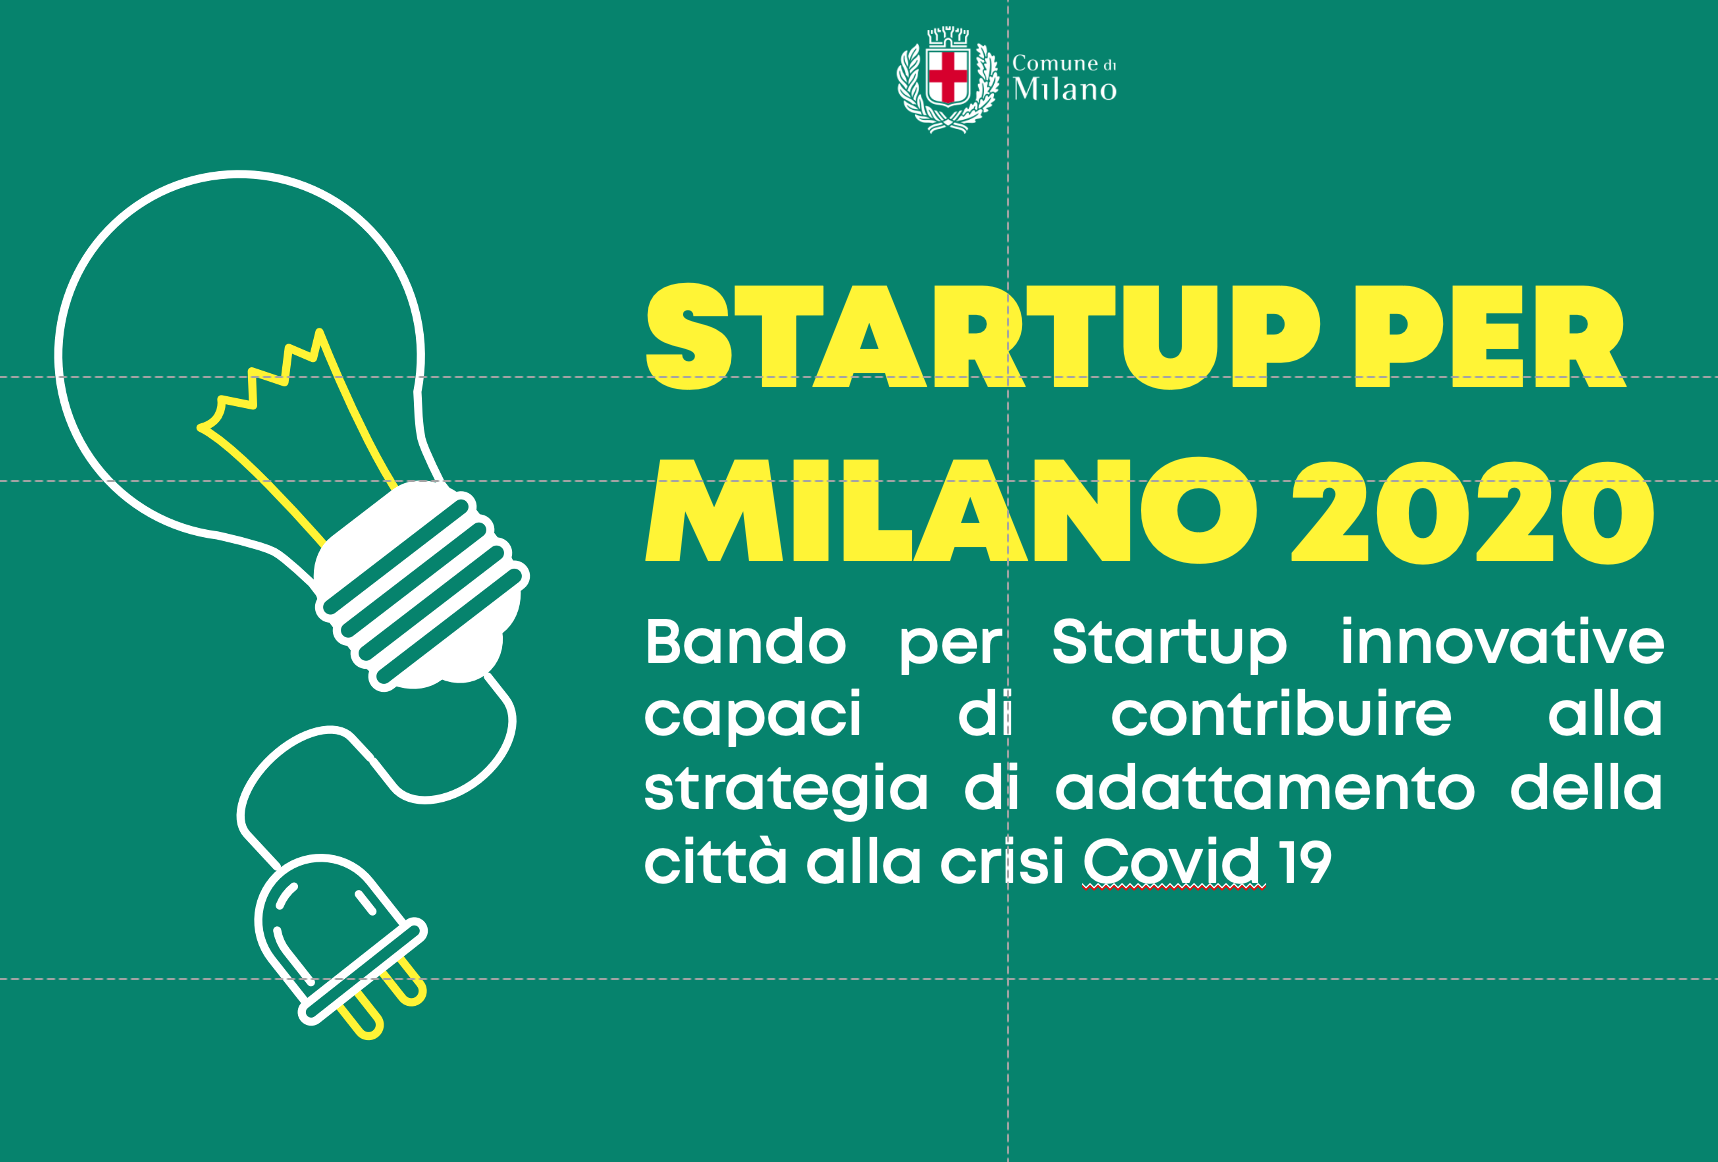 Startup per Milano 2020